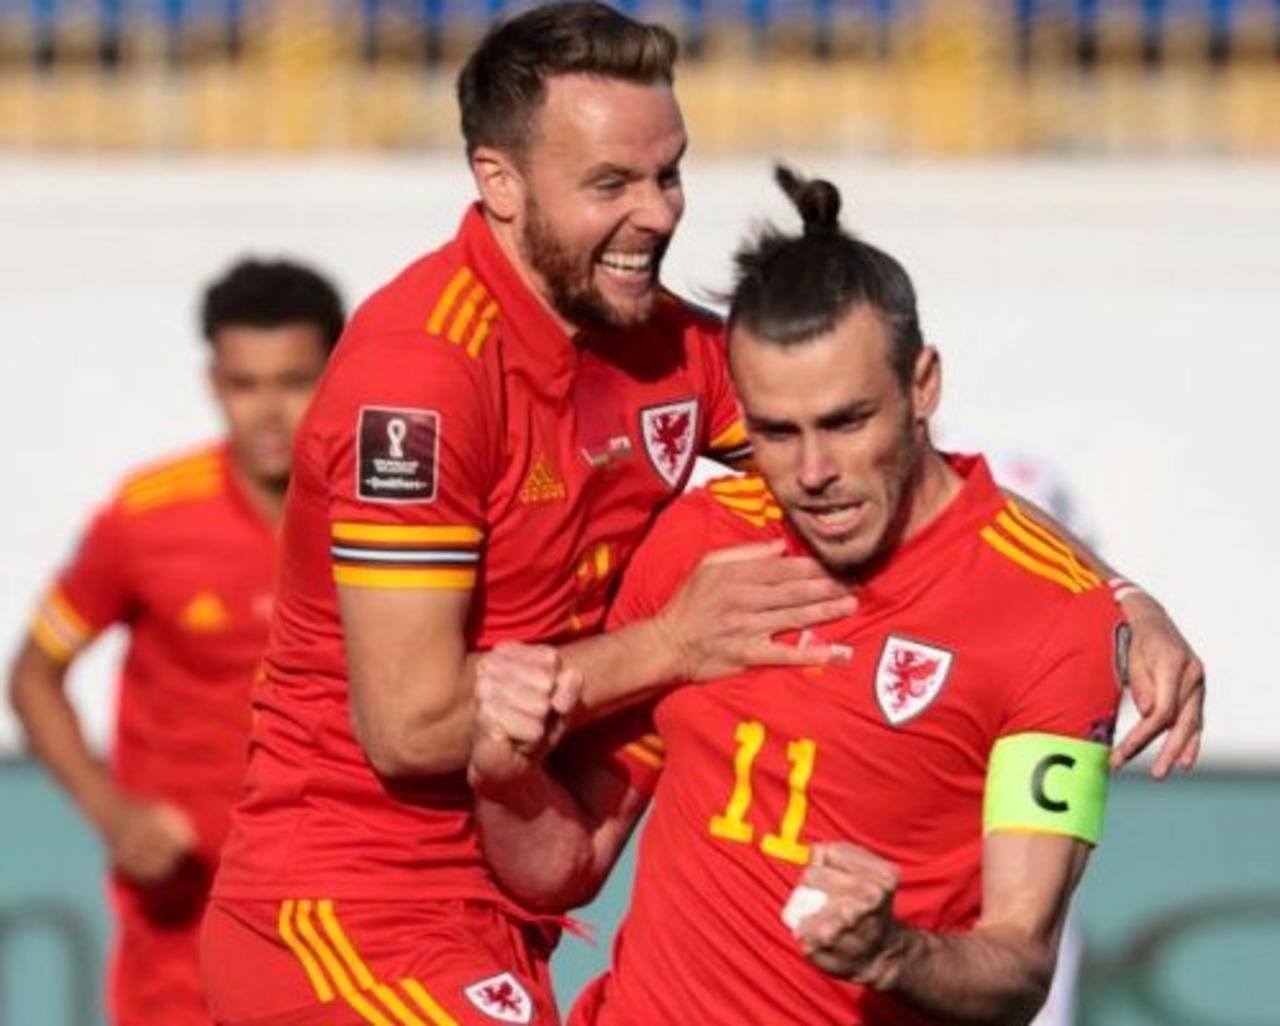 Un triplete de Gareth Bale, que anotó el tanto del triunfo en el tiempo añadido, dio los tres puntos ante Bielorrusia a Gales (2-3) que alienta su camino clasificatorio hacia el Mundial de Qatar.